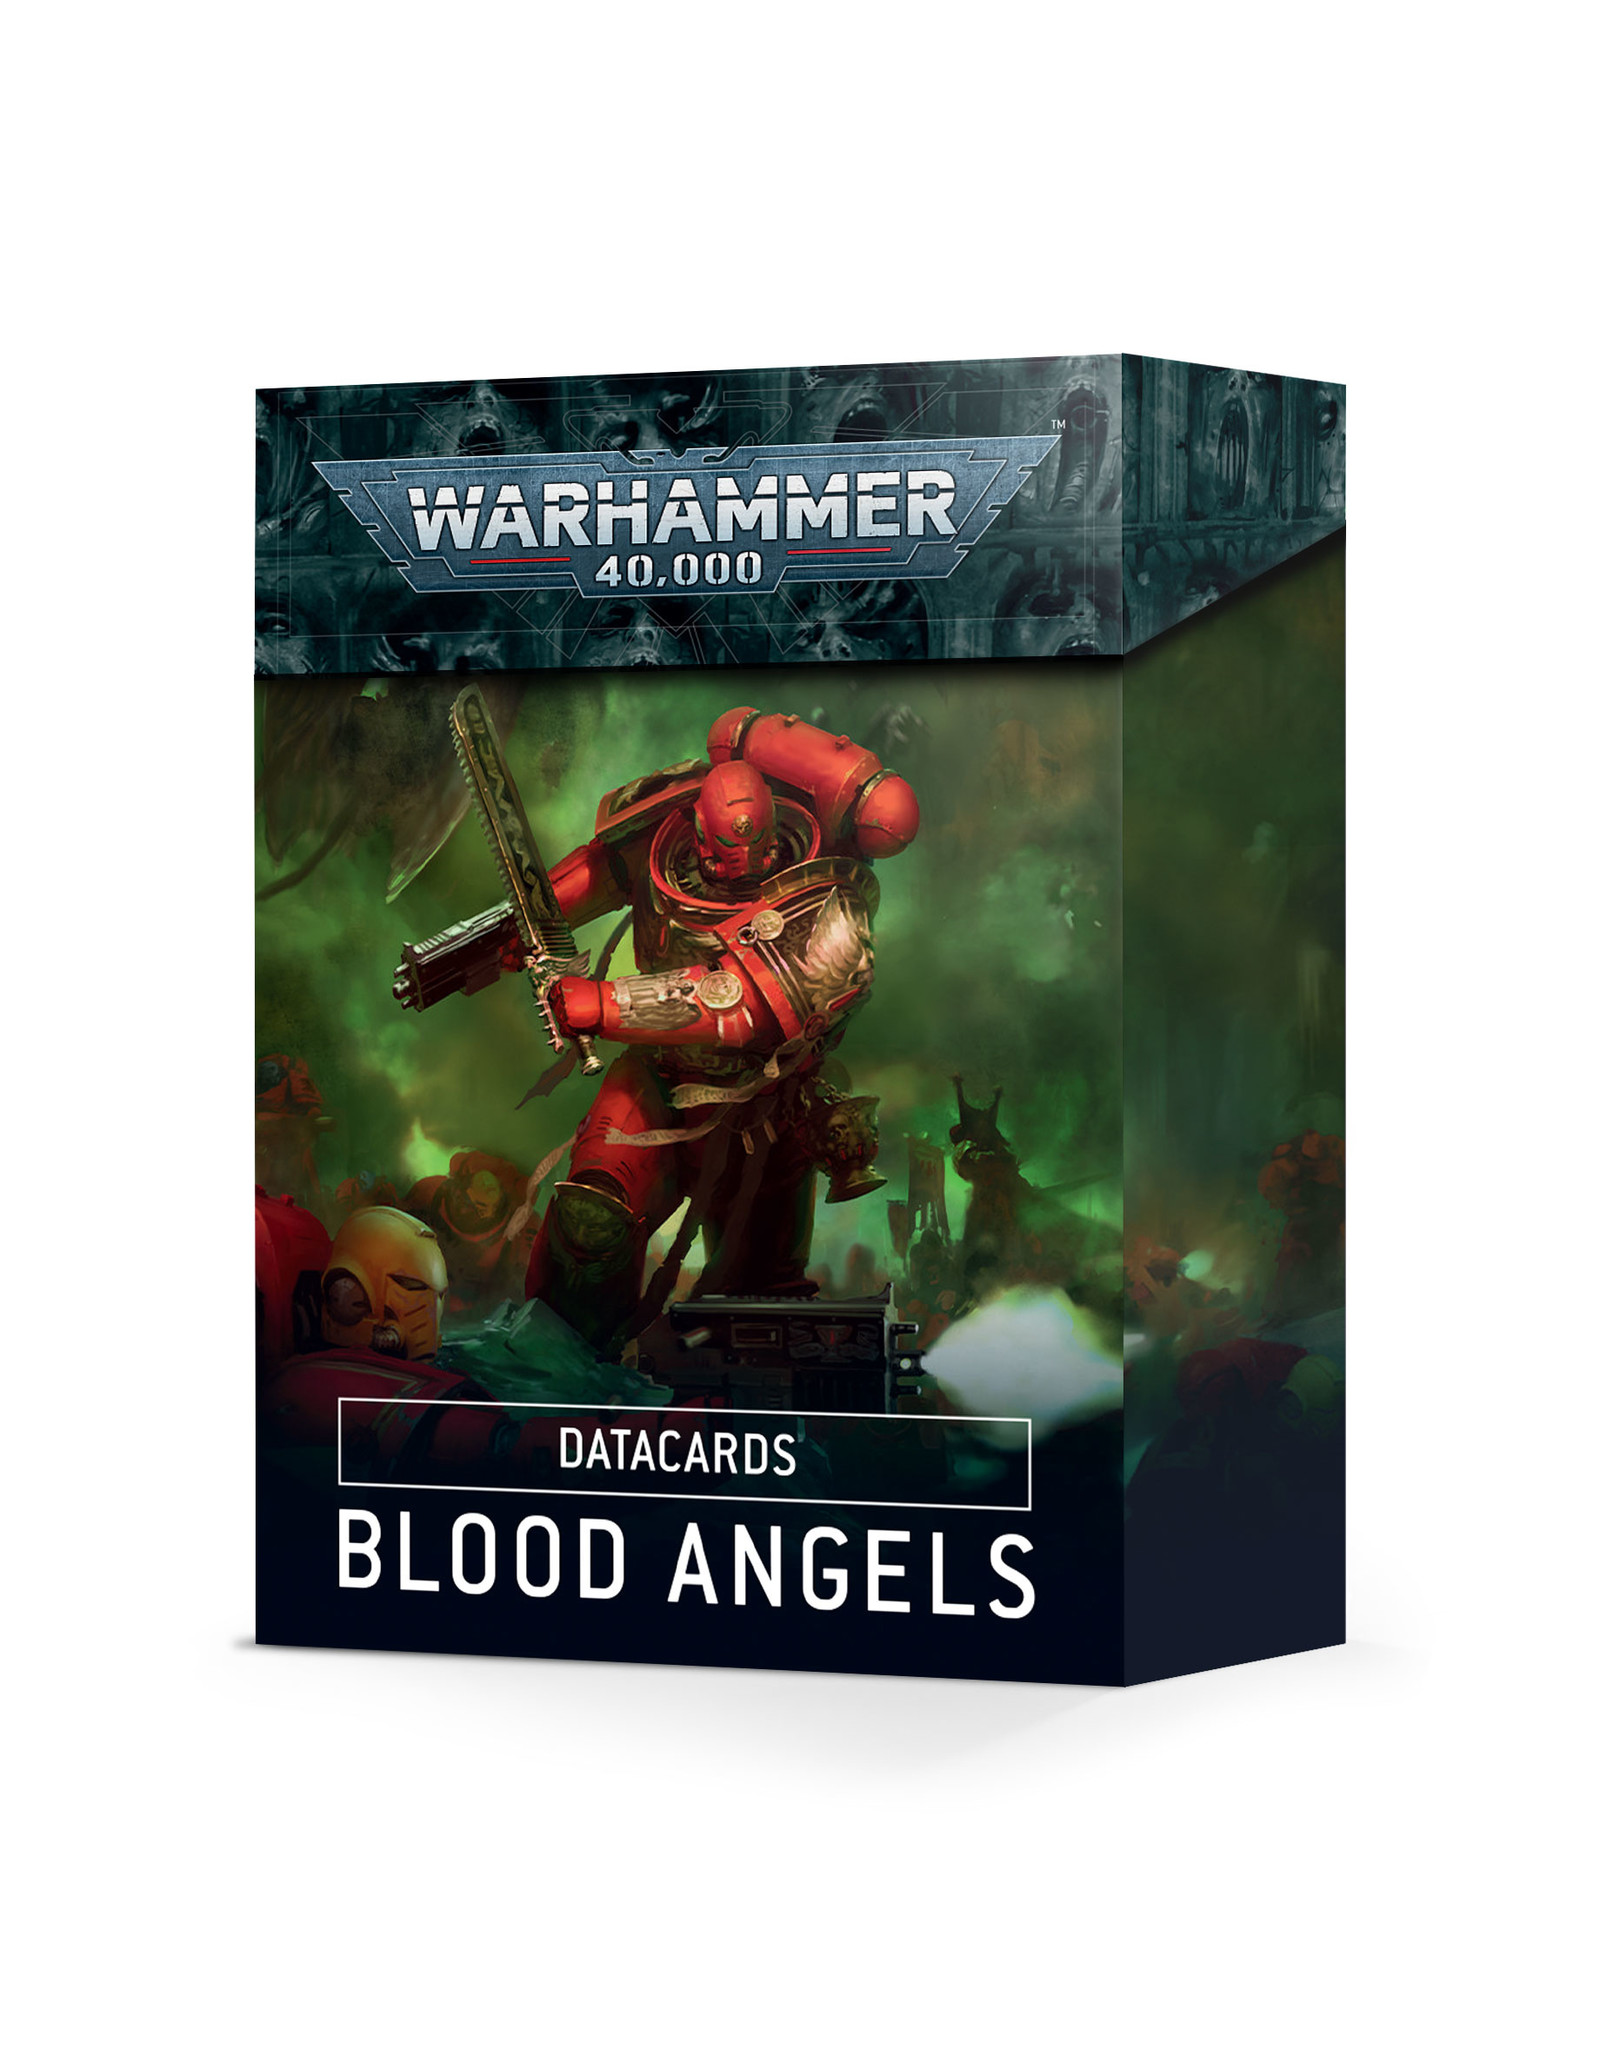 Warhammer 40K Blood Angels Datacards